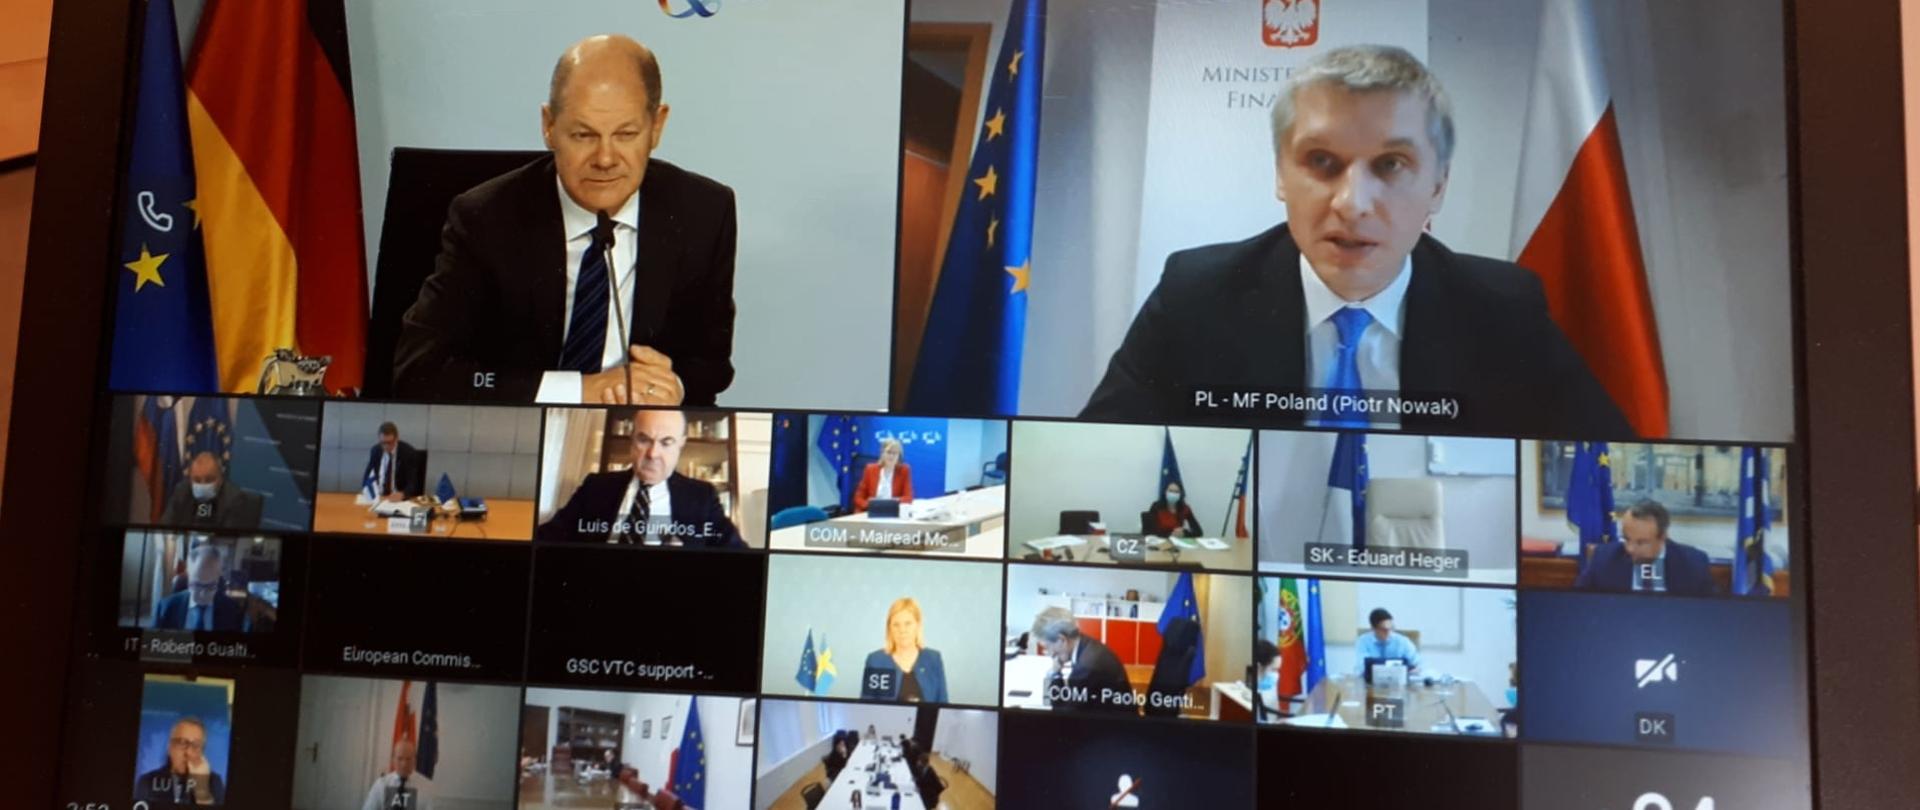 Monitor na którym widać ministra Nowaka przemawiającego podczas spotkania ECOFIN